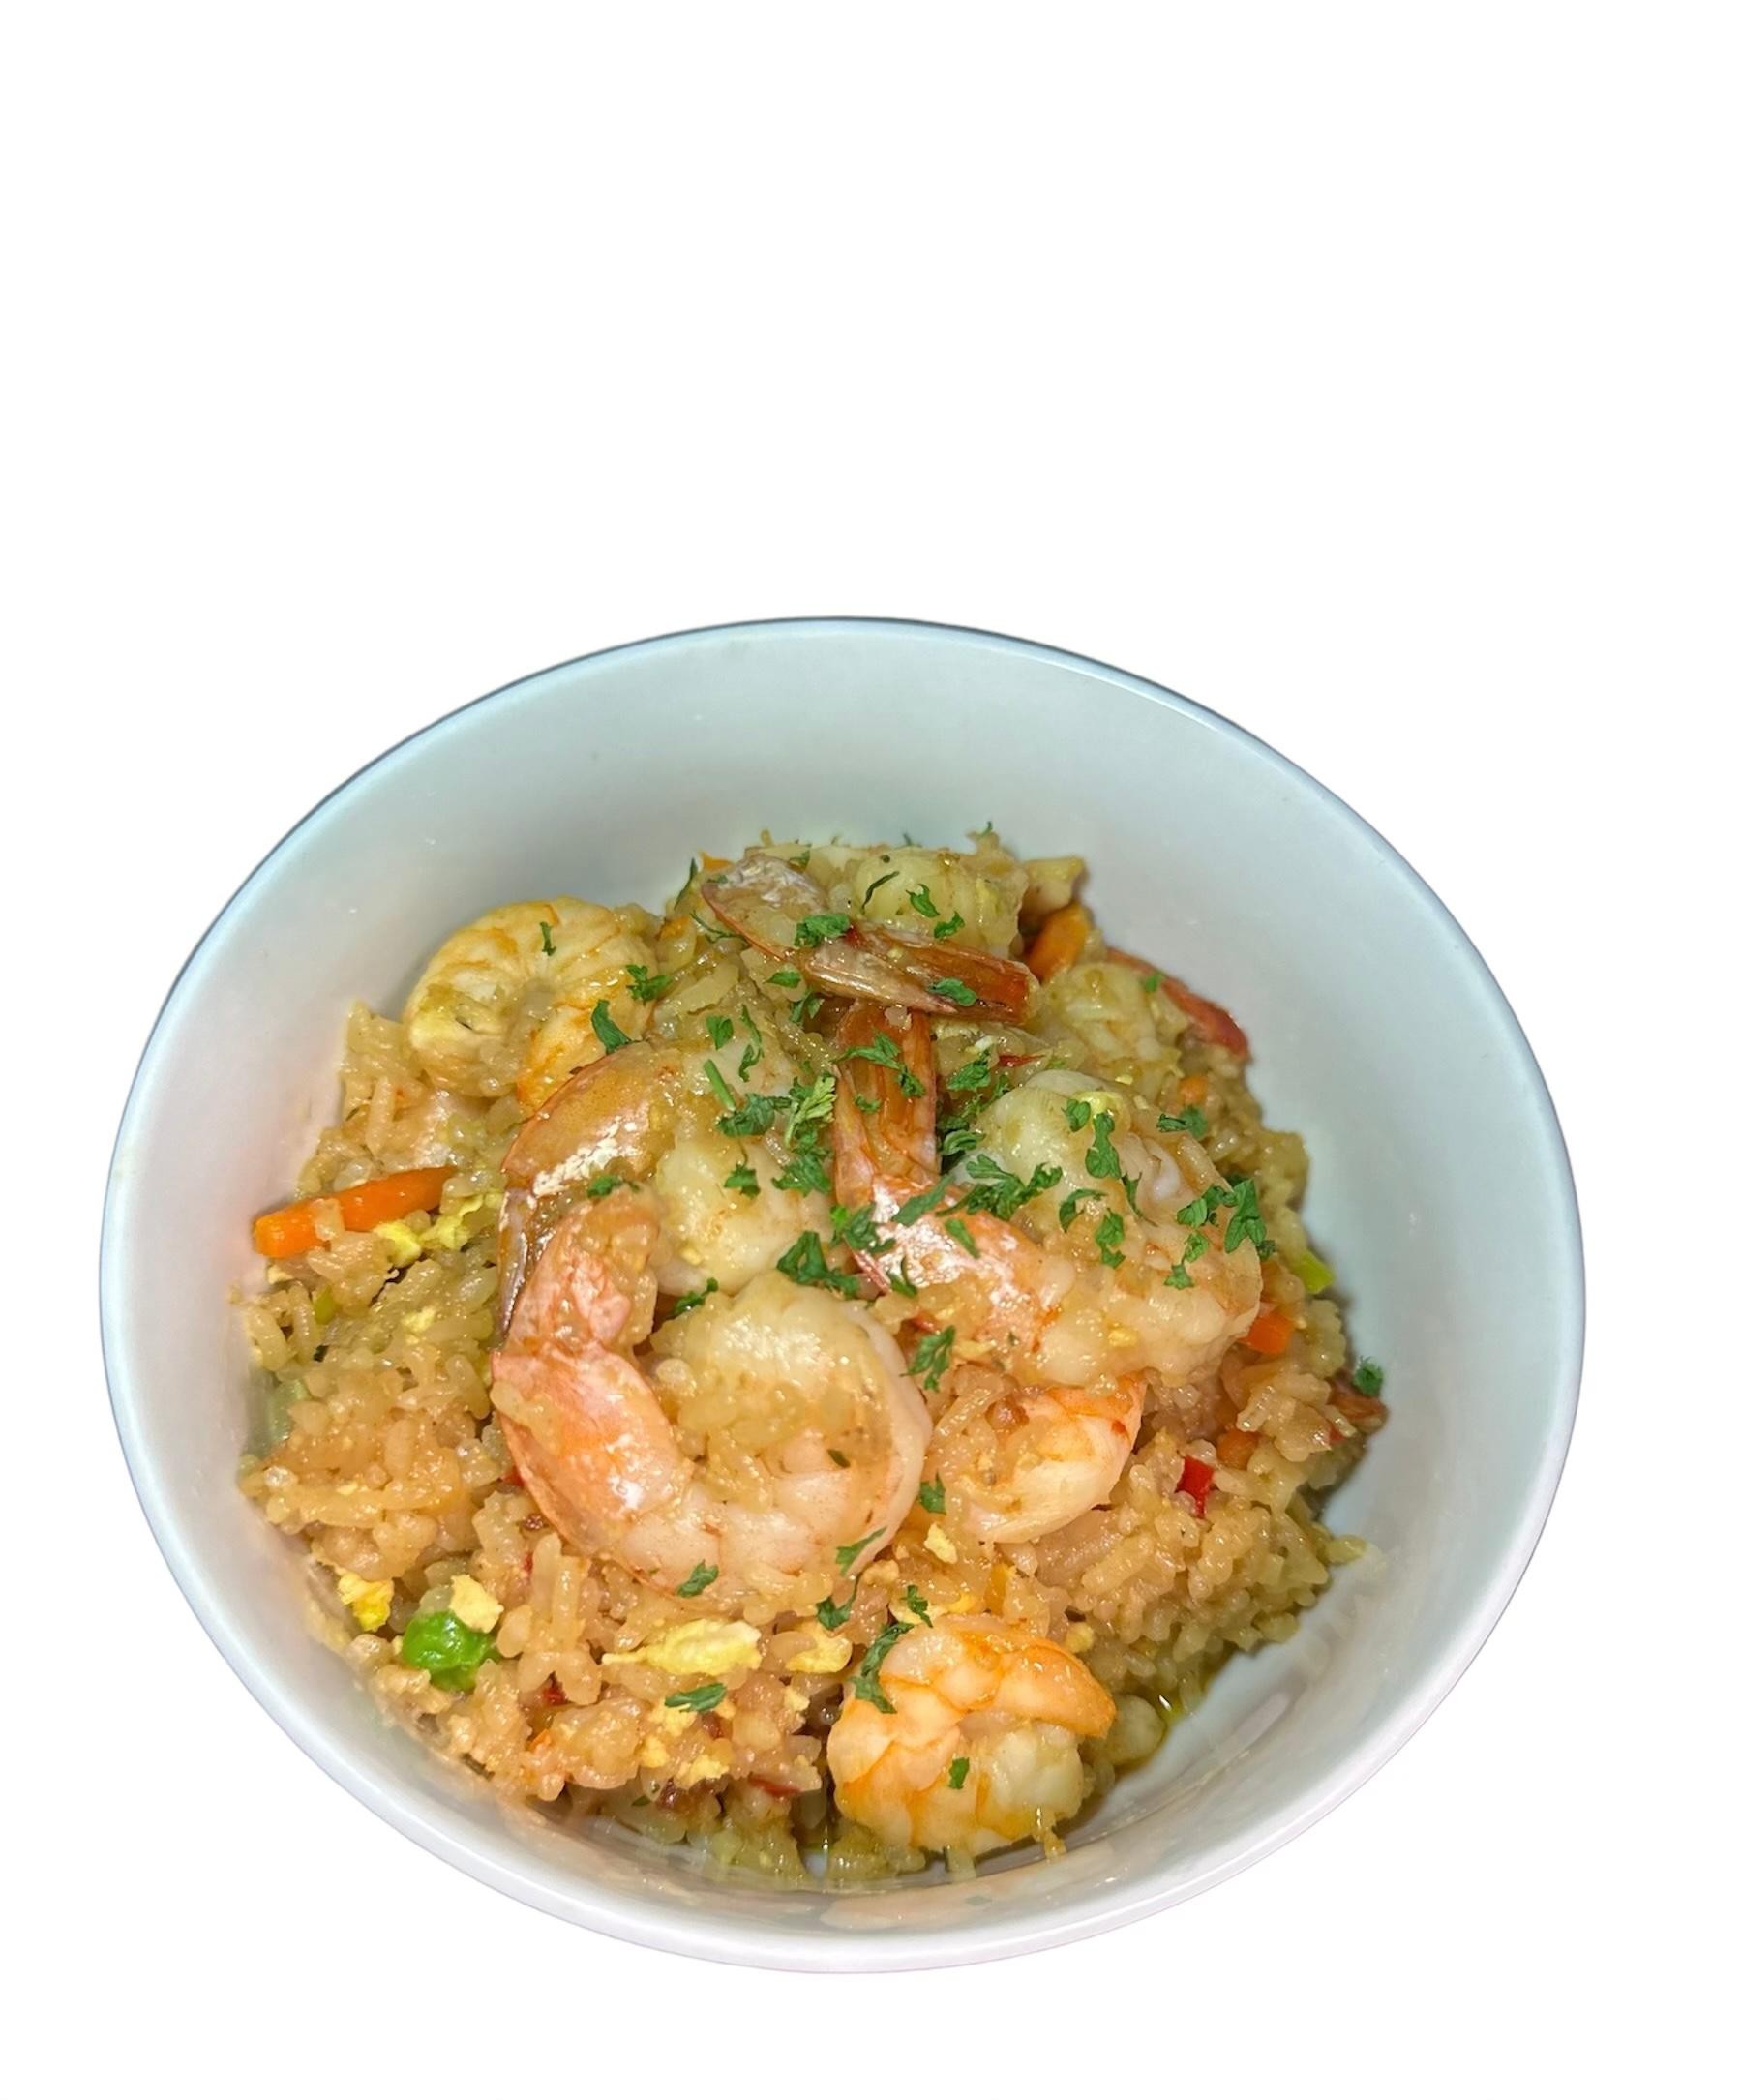 J’s fried rice w/shrimp